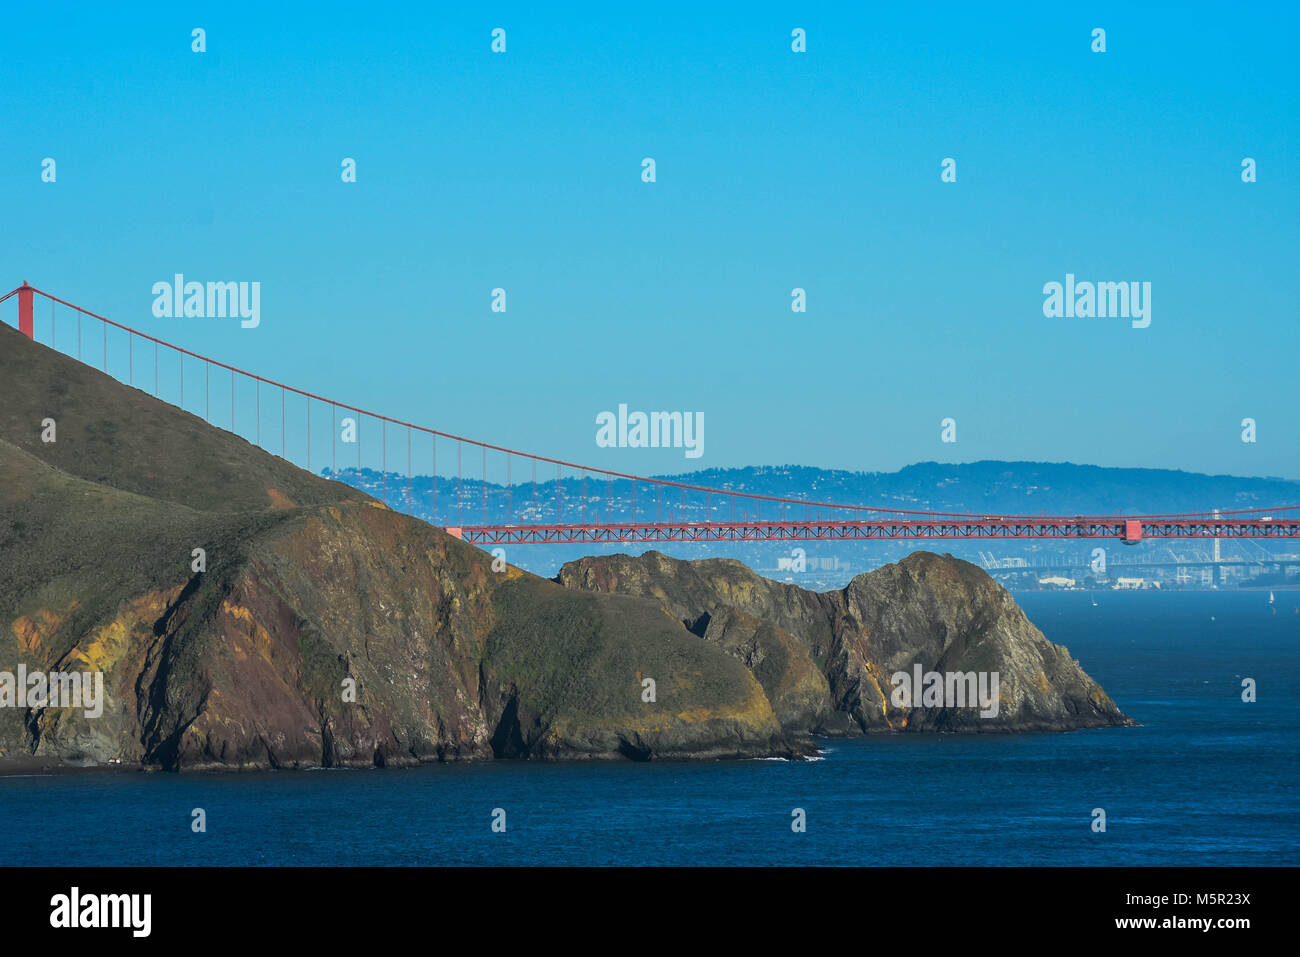 Una giornata di sole offre una visione chiara del Golden Gate Bridge e SF da Promontori Marin, una destinazione preferita per i turisti e la gente del posto. Foto Stock